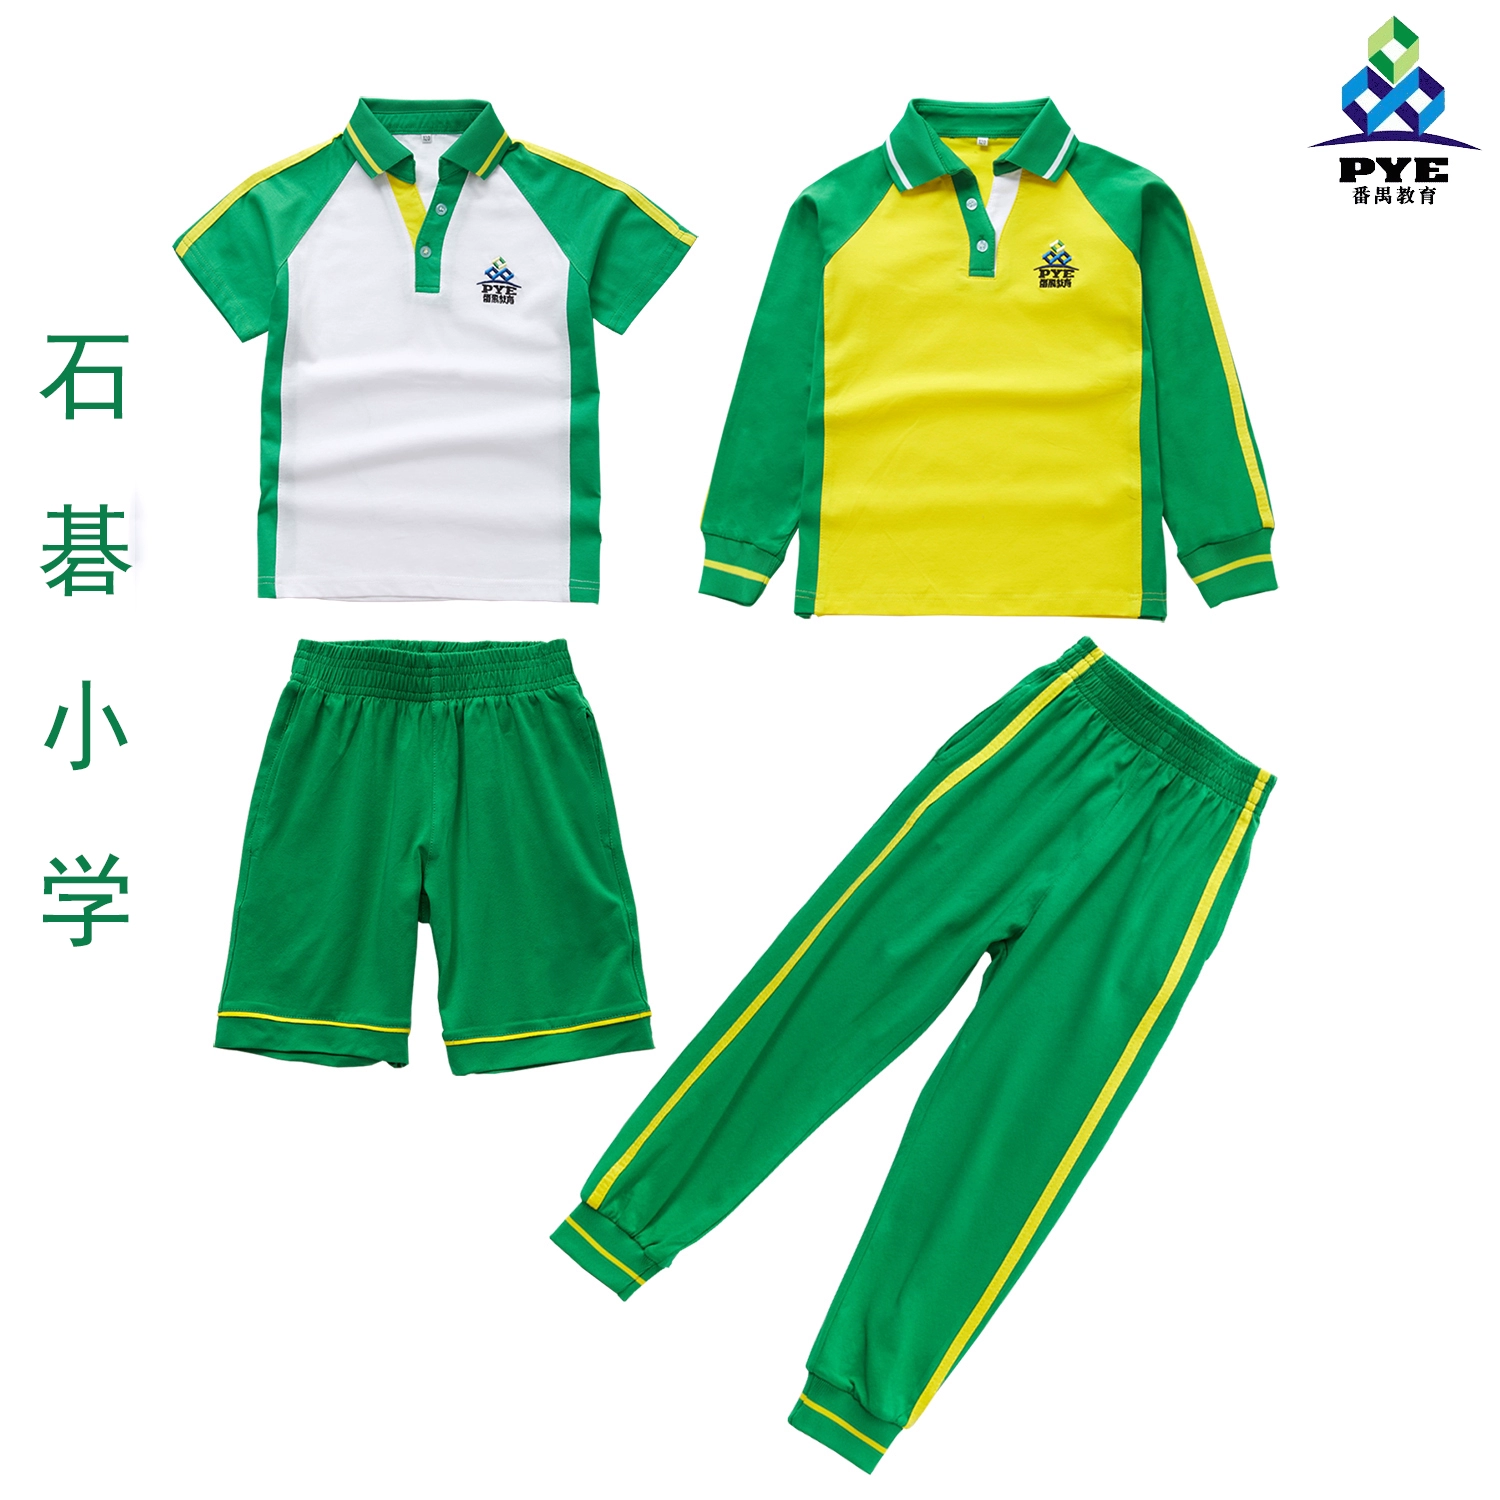 Quảng Châu Panyu Quận trung tâm Shijie học sinh tiểu học đồng phục nam và nữ 2019 áo phông cotton mùa hè mới đẹp - Đồng phục trường học / tùy chỉnh thực hiện